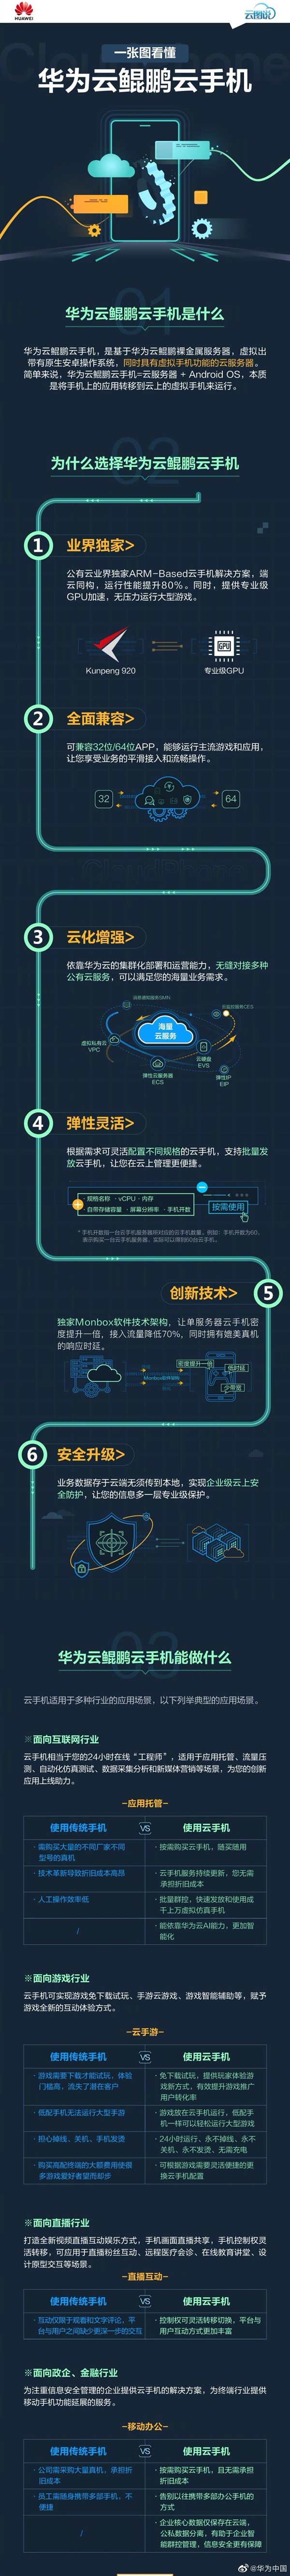 原生安卓系统、鲲鹏920加持 华为发布2020“新旗舰”云手机